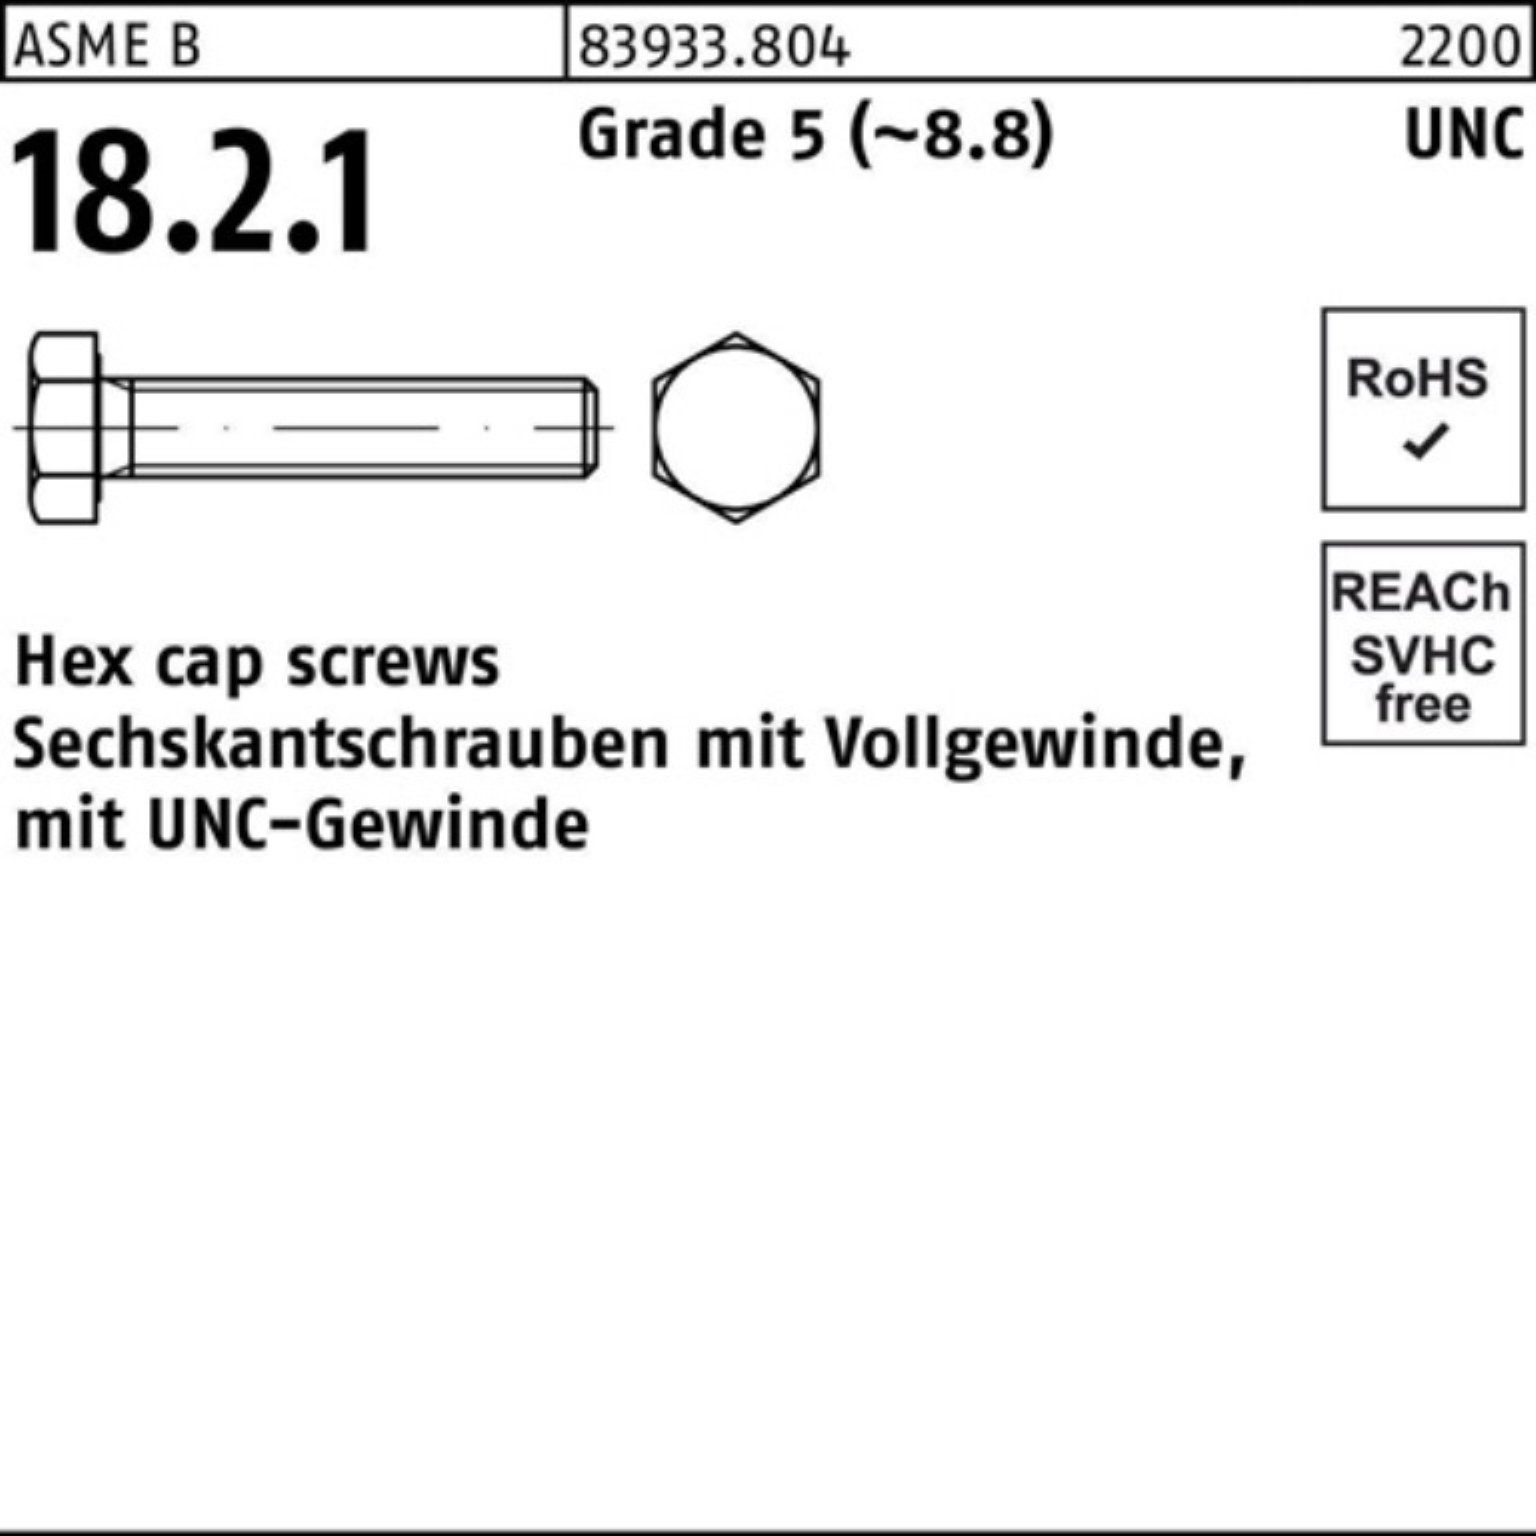 Reyher Sechskantschraube 100er Pack Sechskantschraube R 83933 UNC-Gewinde VG 7/8x 5 Grade 5 (8